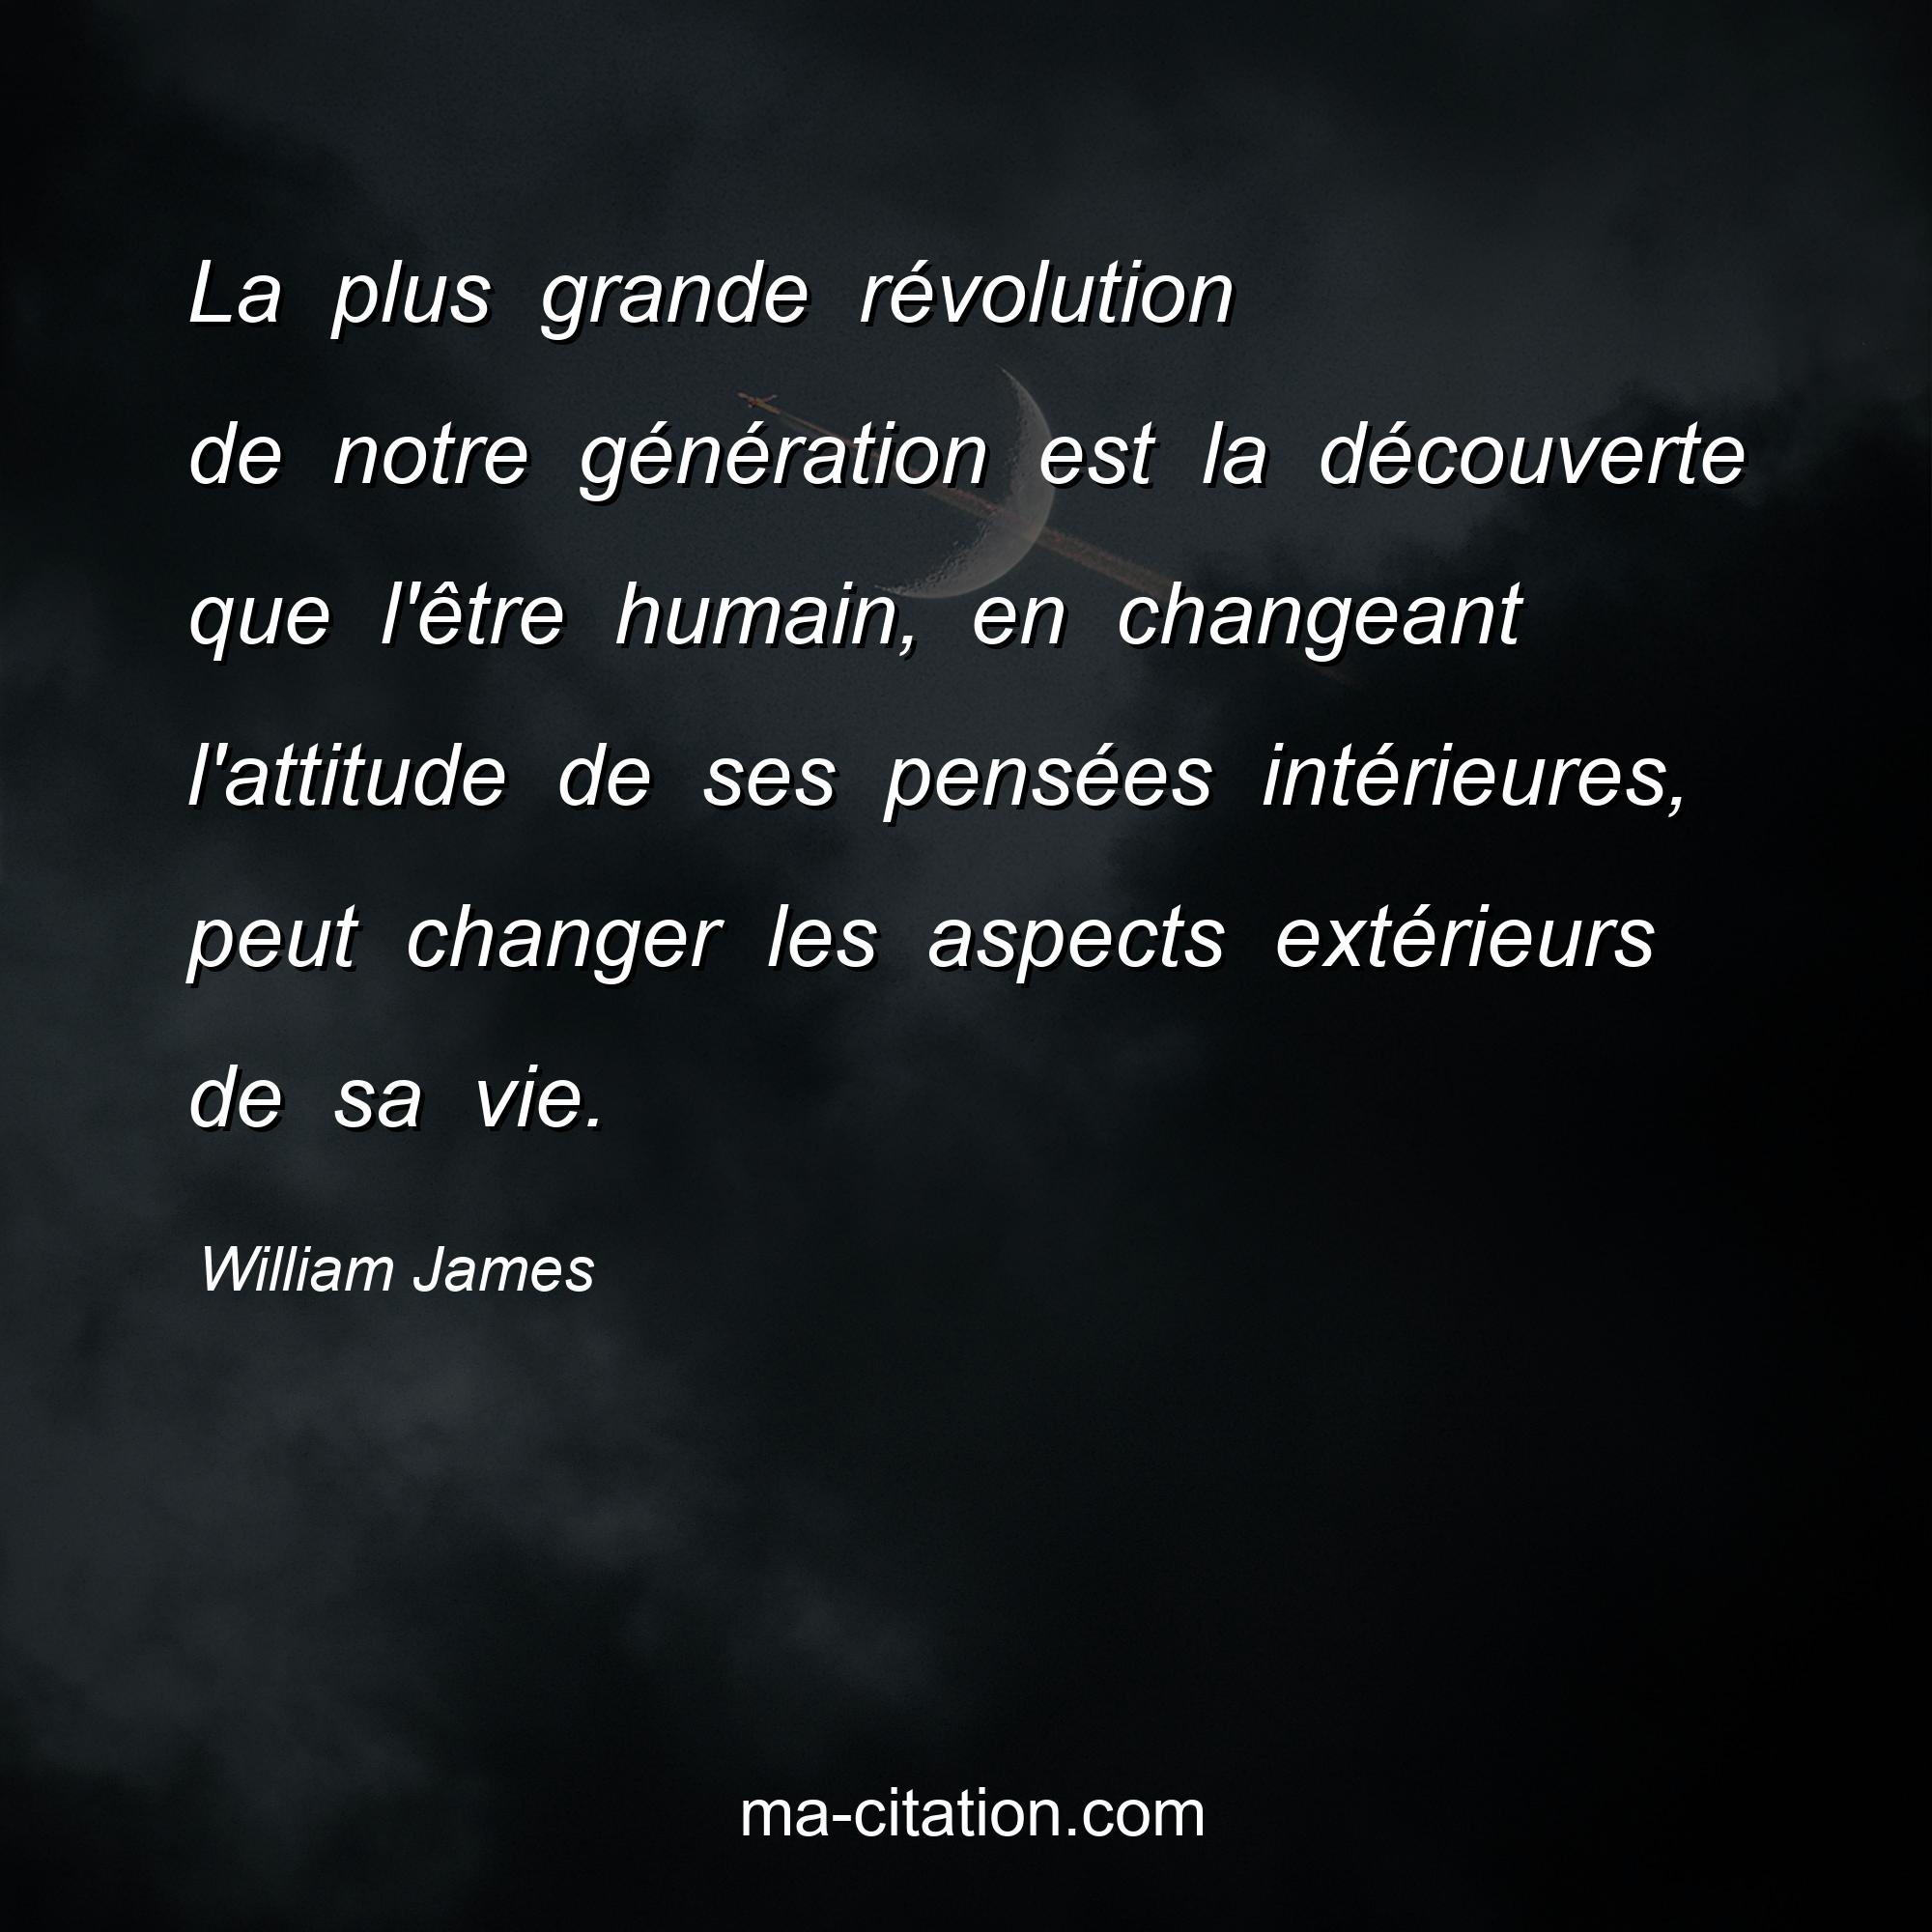 William James : La plus grande révolution de notre génération est la découverte que l'être humain, en changeant l'attitude de ses pensées intérieures, peut changer les aspects extérieurs de sa vie.